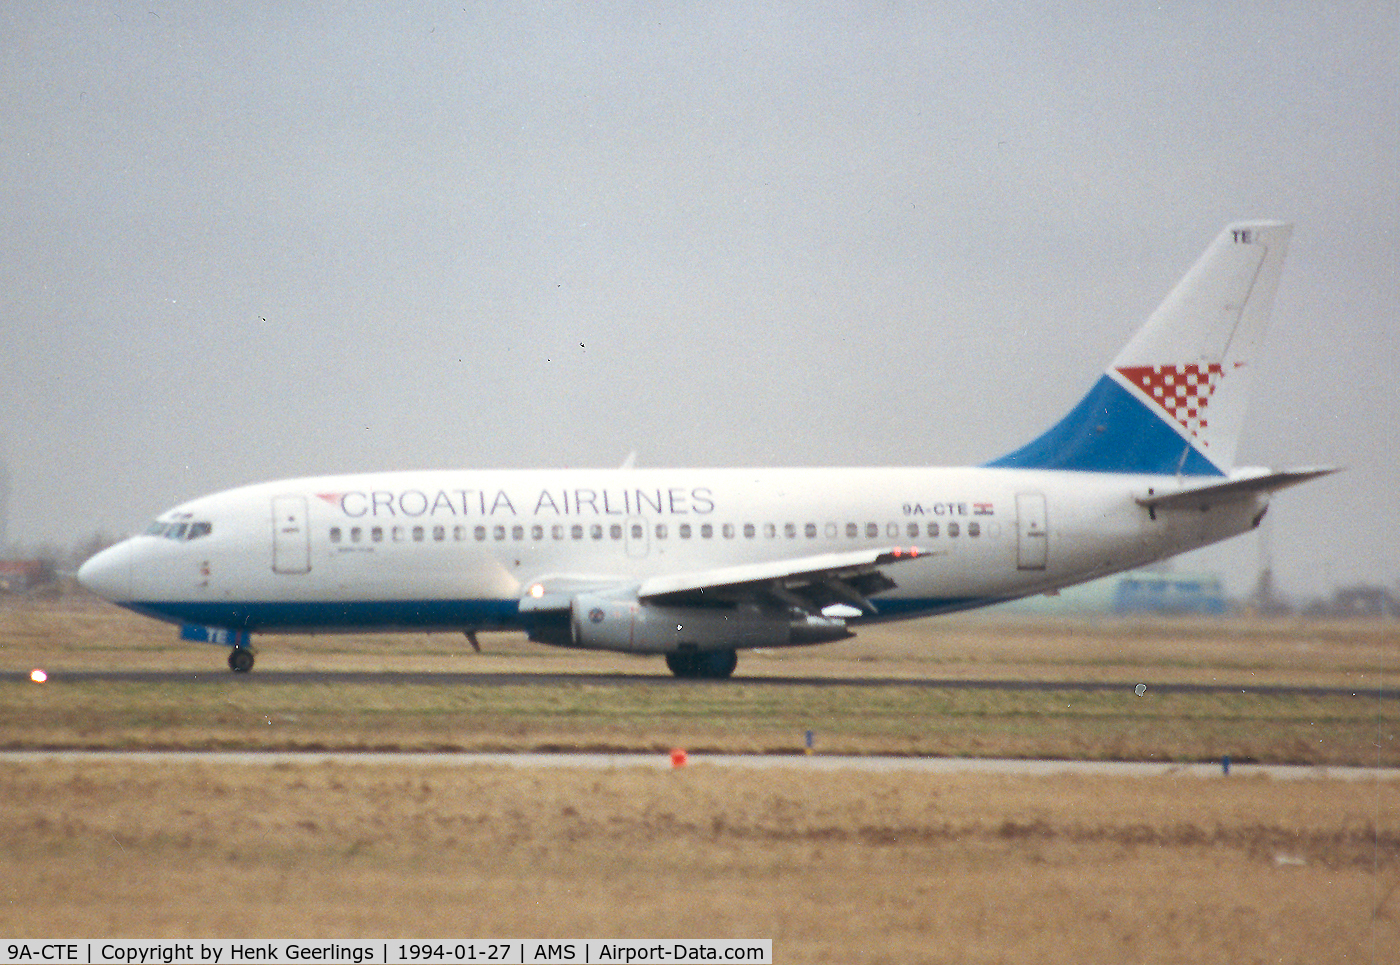 9A-CTE, 1982 Boeing 737-230 C/N 22634, Croatia Airlines